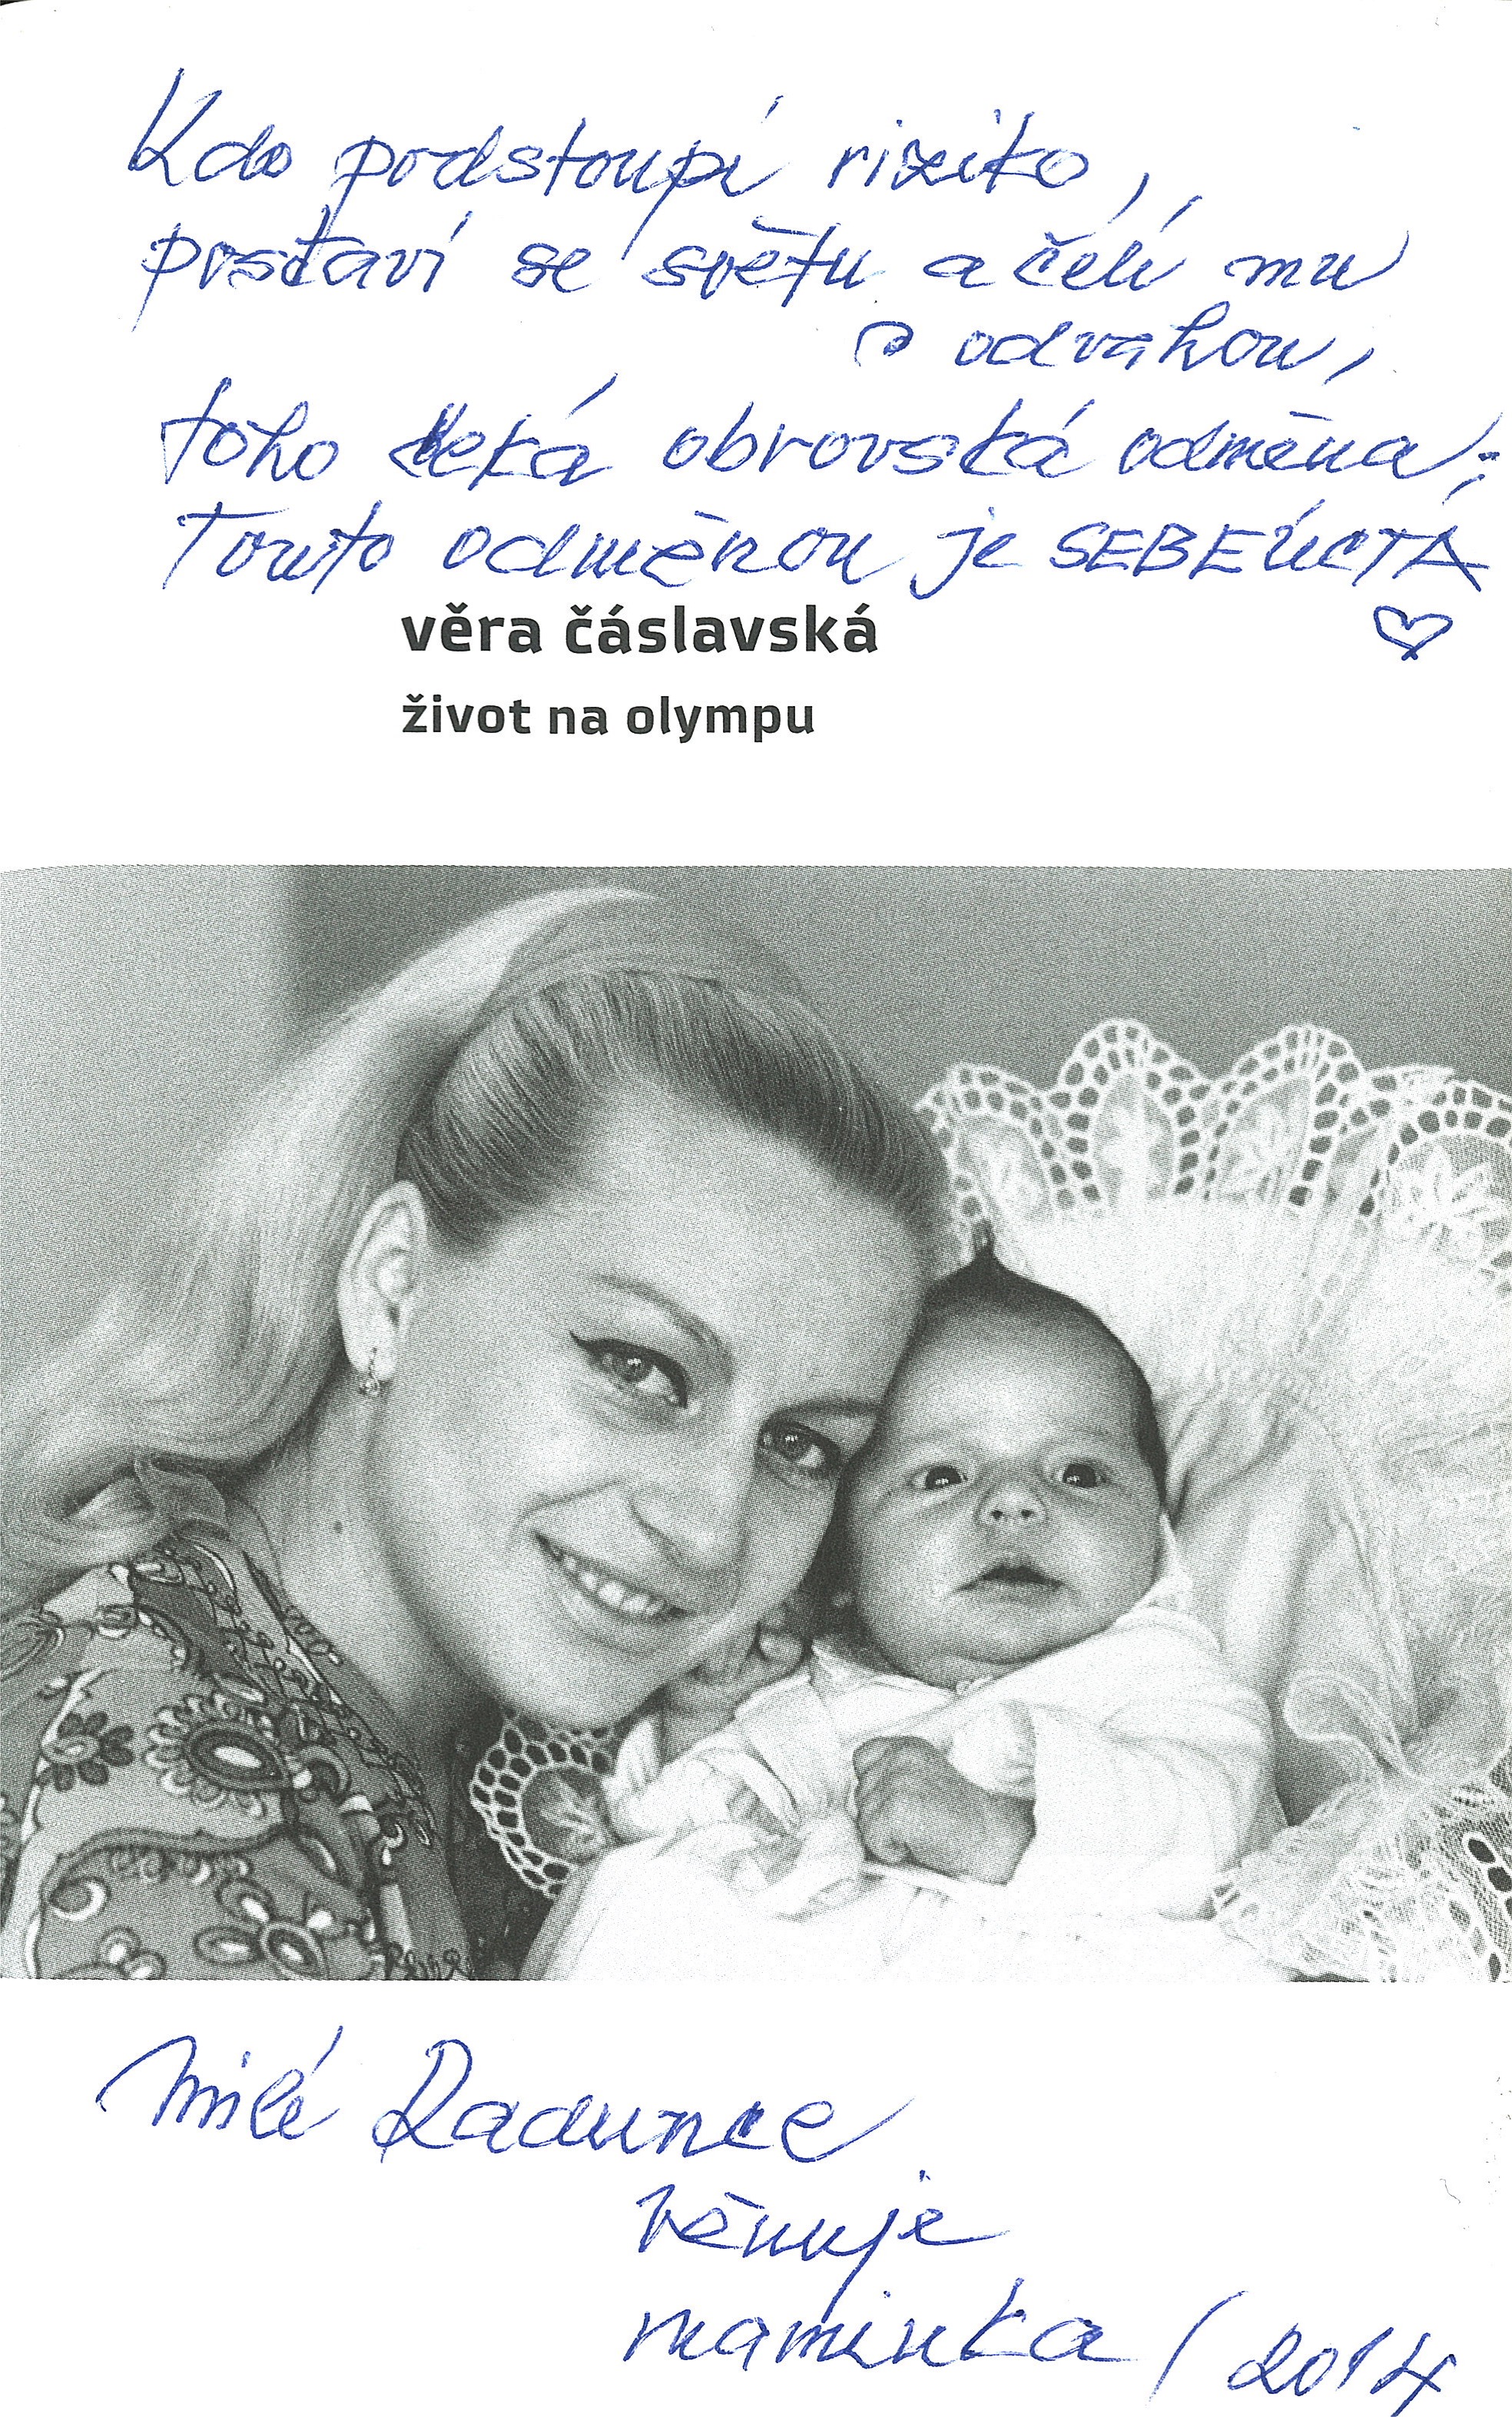 Caslavska's  Motto